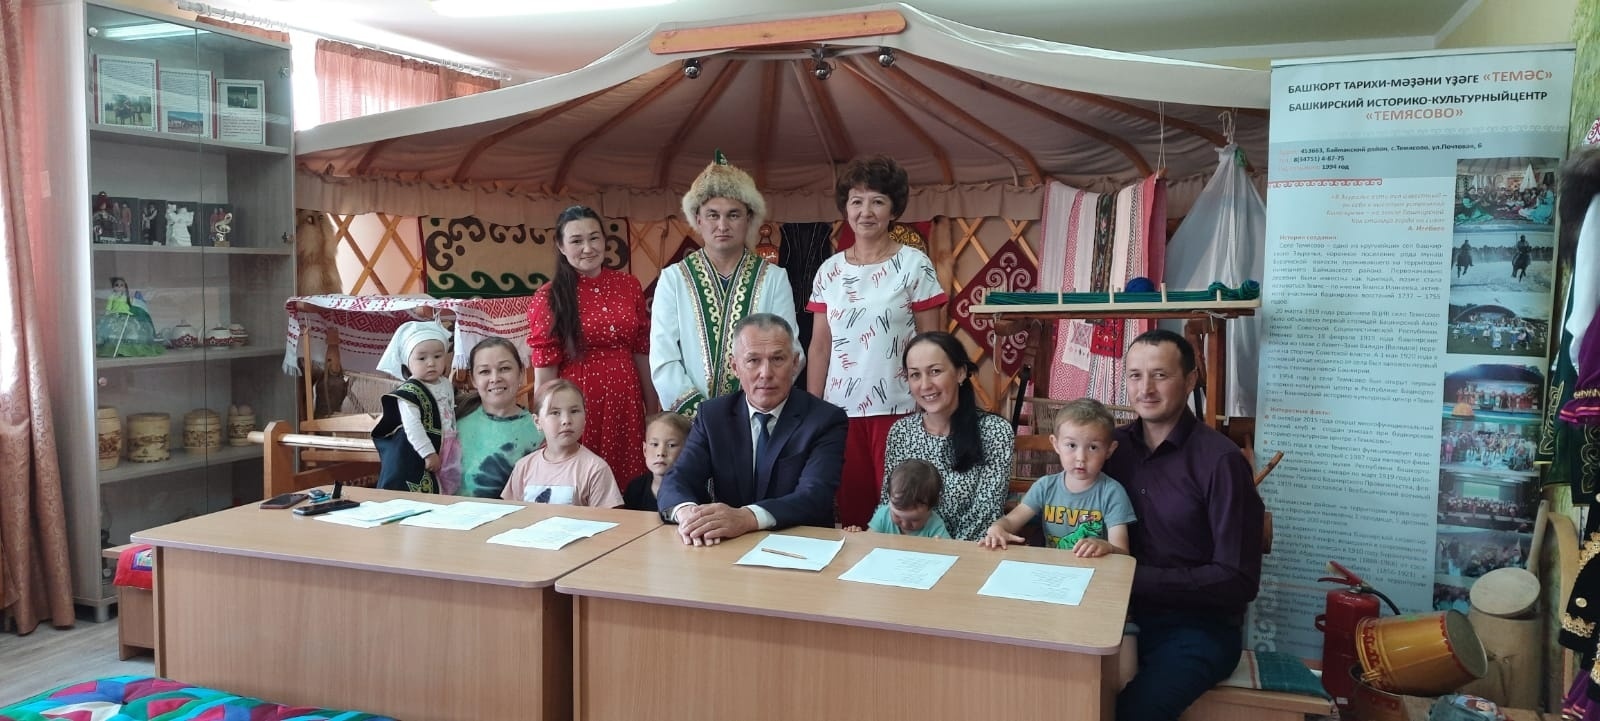 В первой столице Башкирии многодетные семьи приняли участие в мероприятии, посвящённом Дню семьи, любви и верности